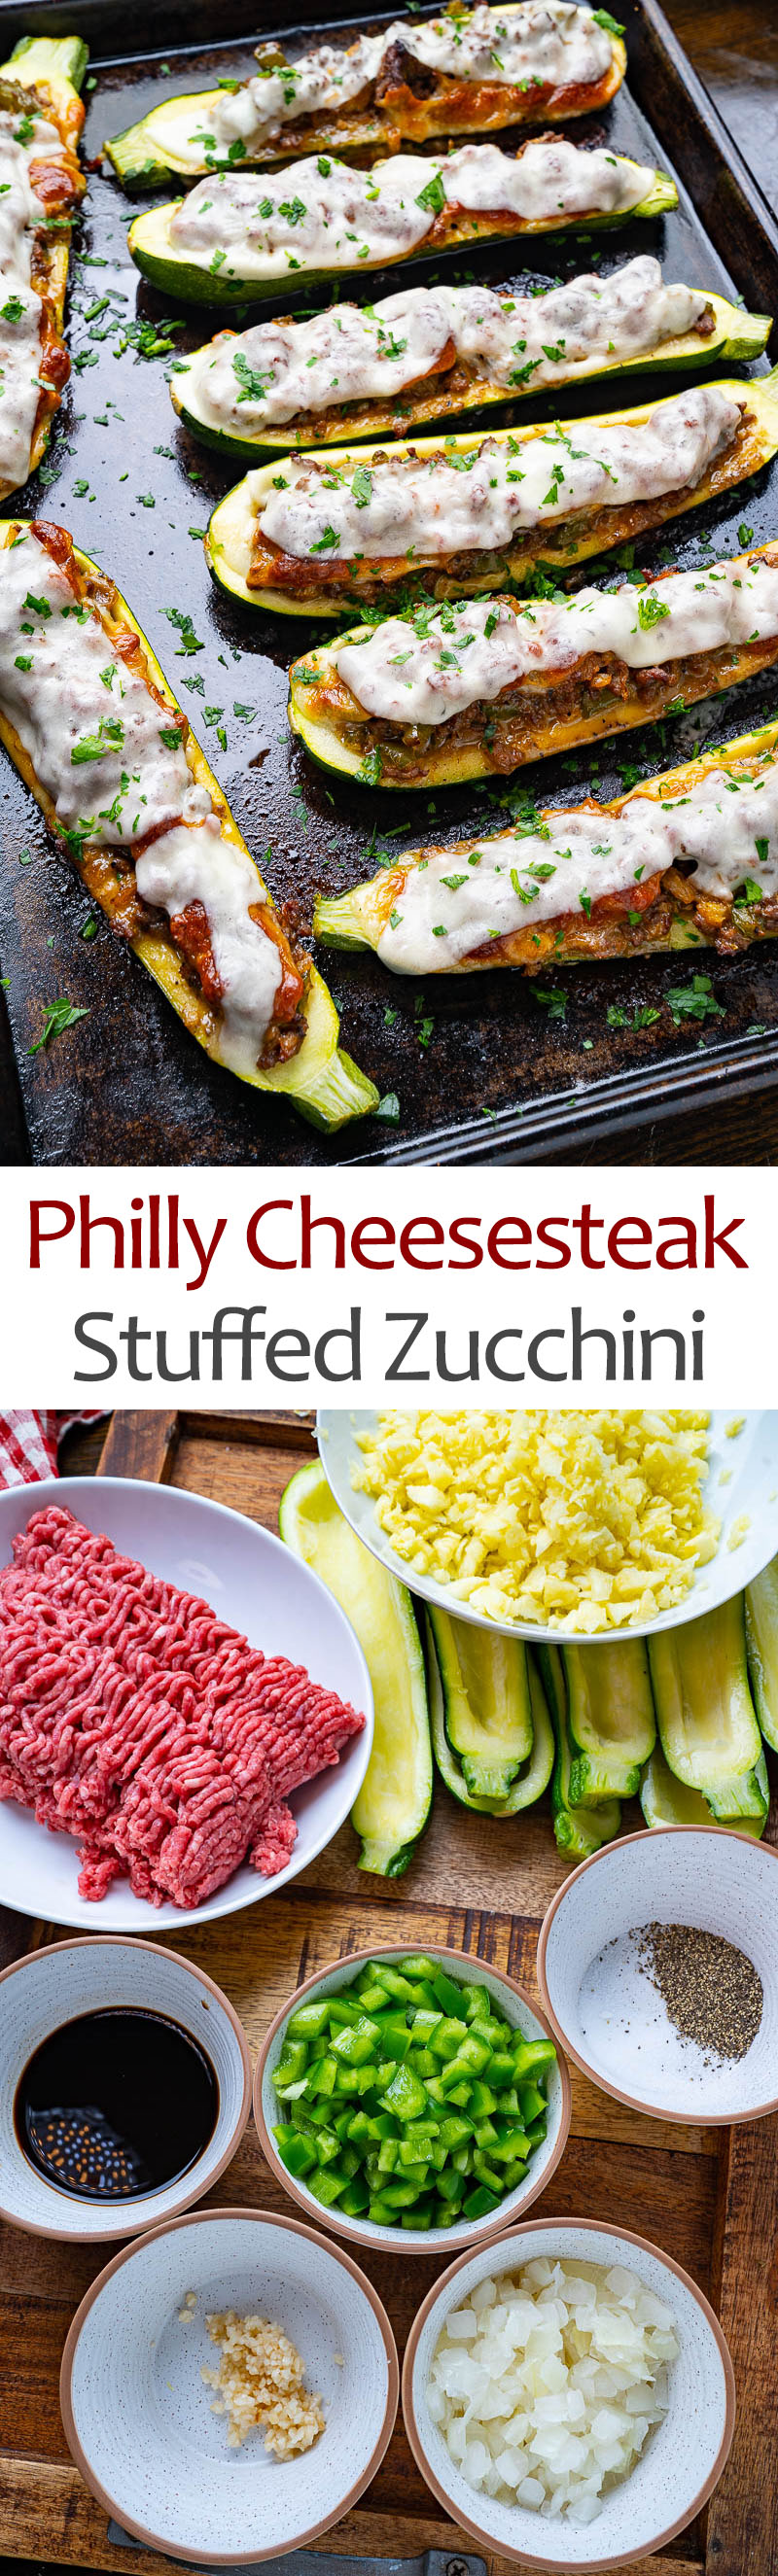 Philly Cheesesteak Stuffed Zucchini